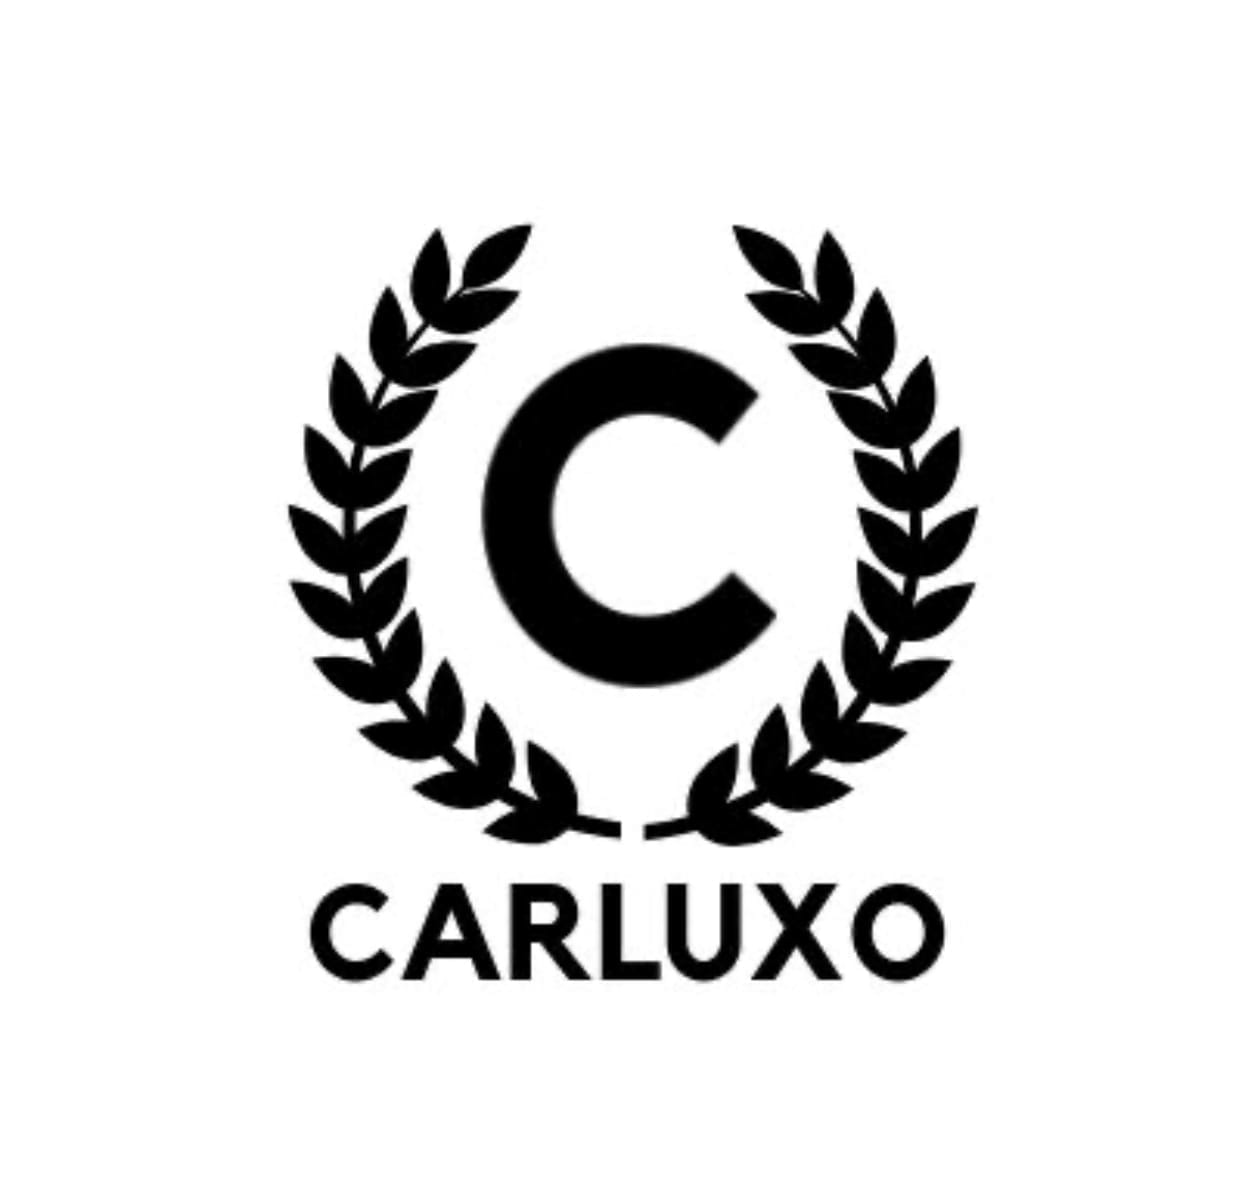 Carluxo